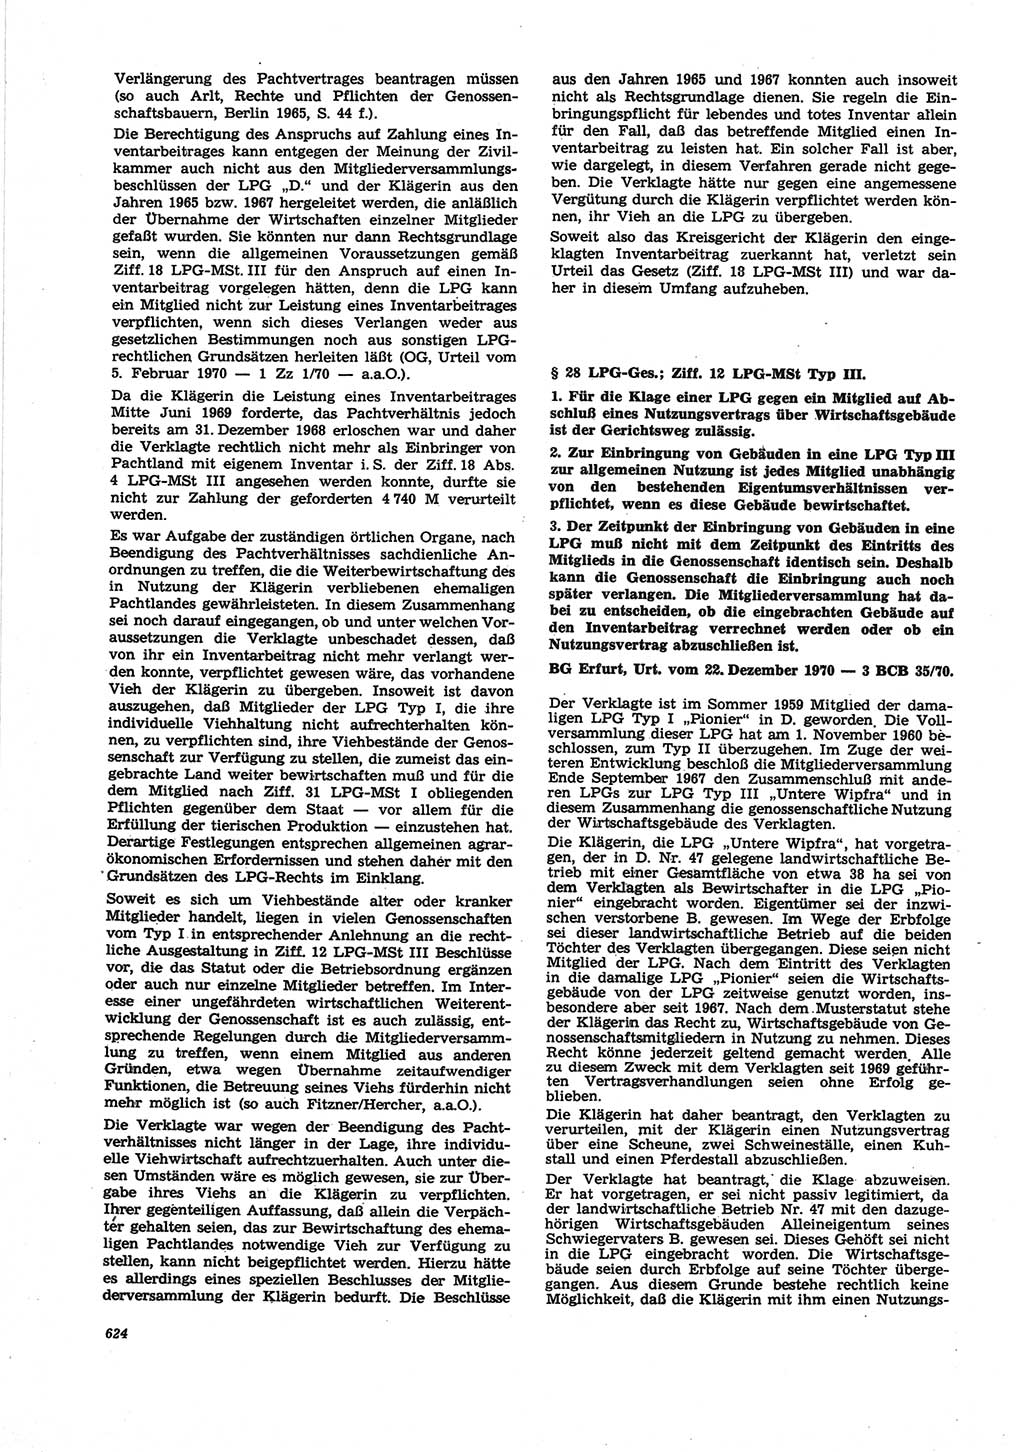 Neue Justiz (NJ), Zeitschrift für Recht und Rechtswissenschaft [Deutsche Demokratische Republik (DDR)], 25. Jahrgang 1971, Seite 624 (NJ DDR 1971, S. 624)